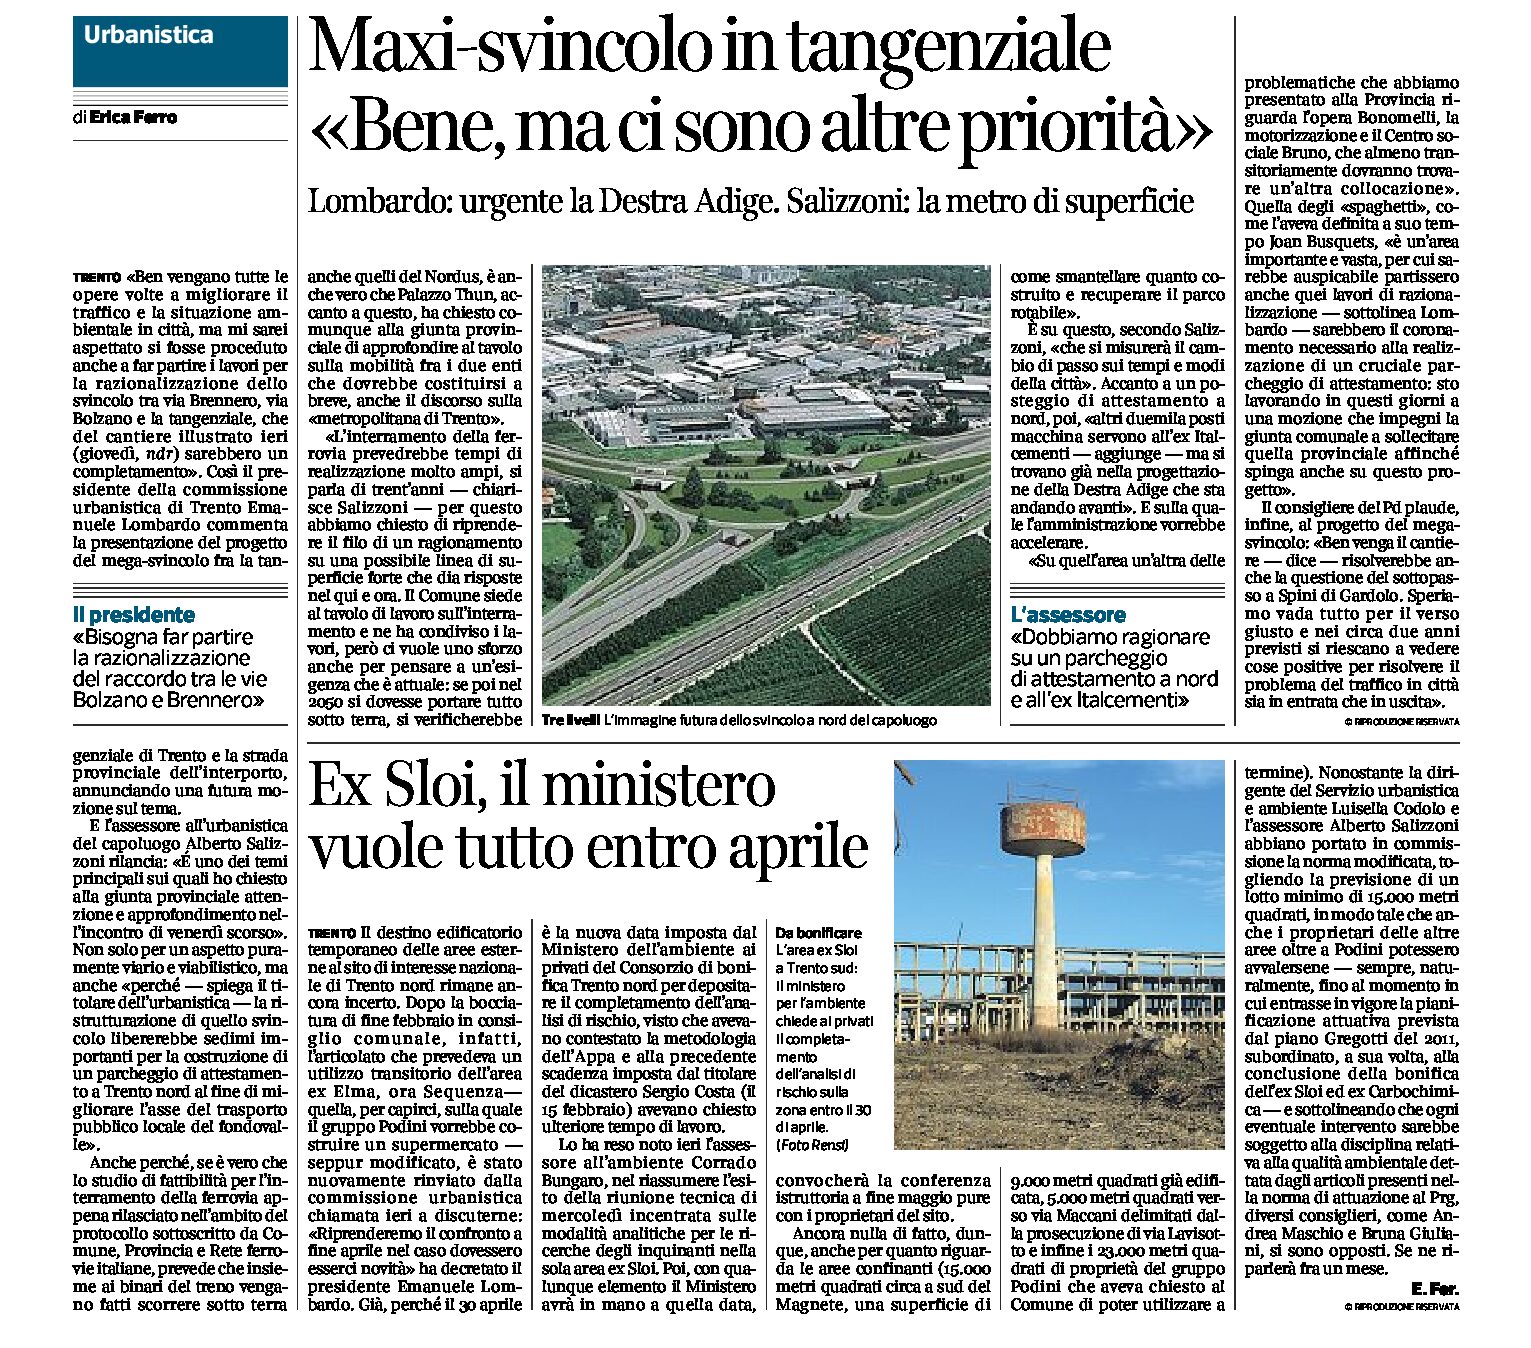 Trento, urbanistica: il maxi-svincolo in tangenziale, la metro di superficie, la Destra Adige, l’area ex Sloi